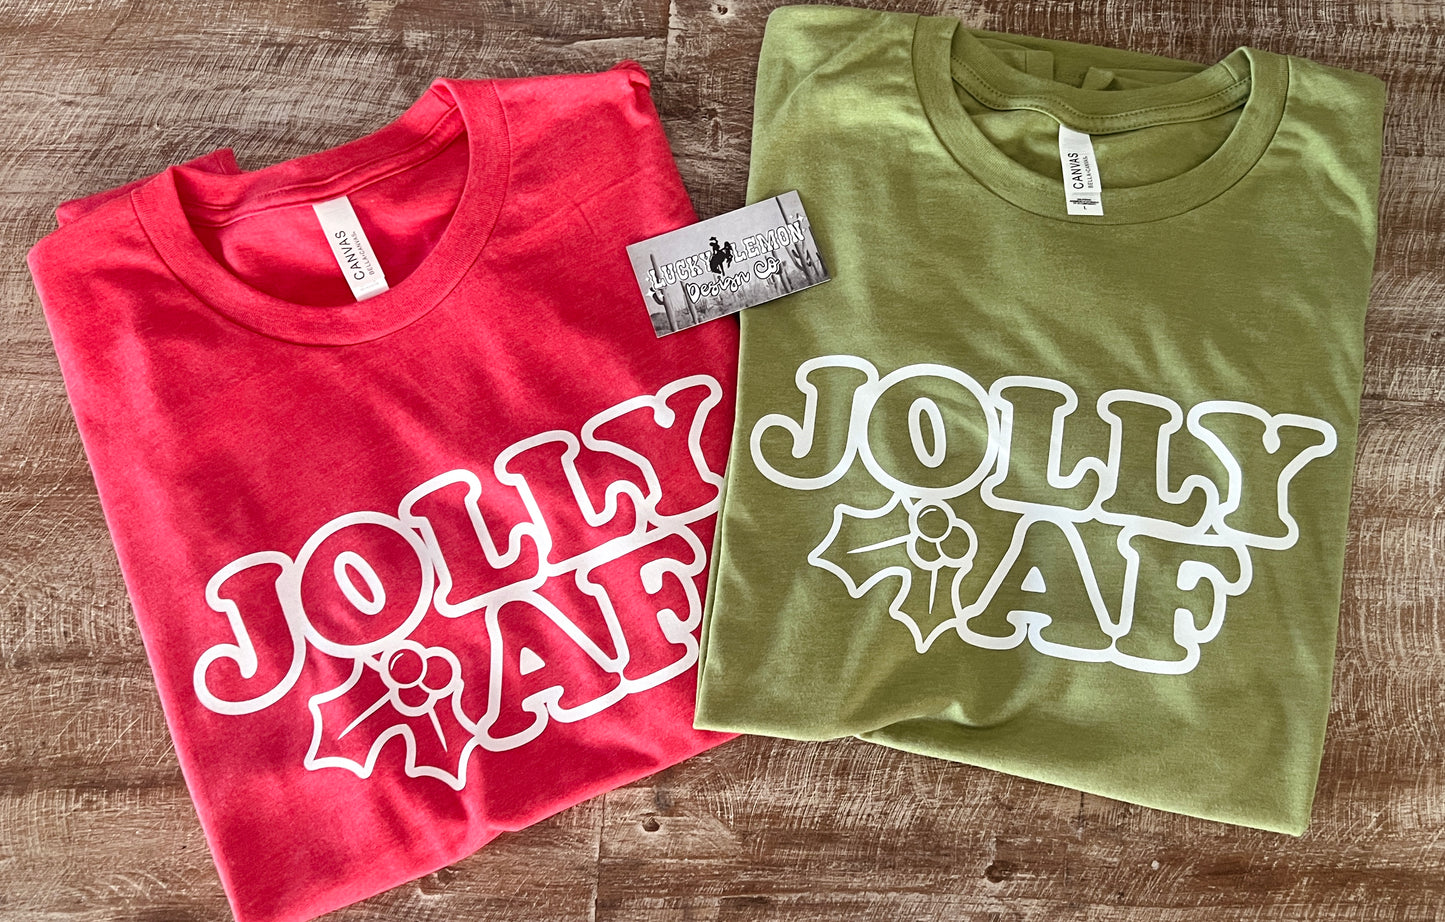 Jolly af Tshirt